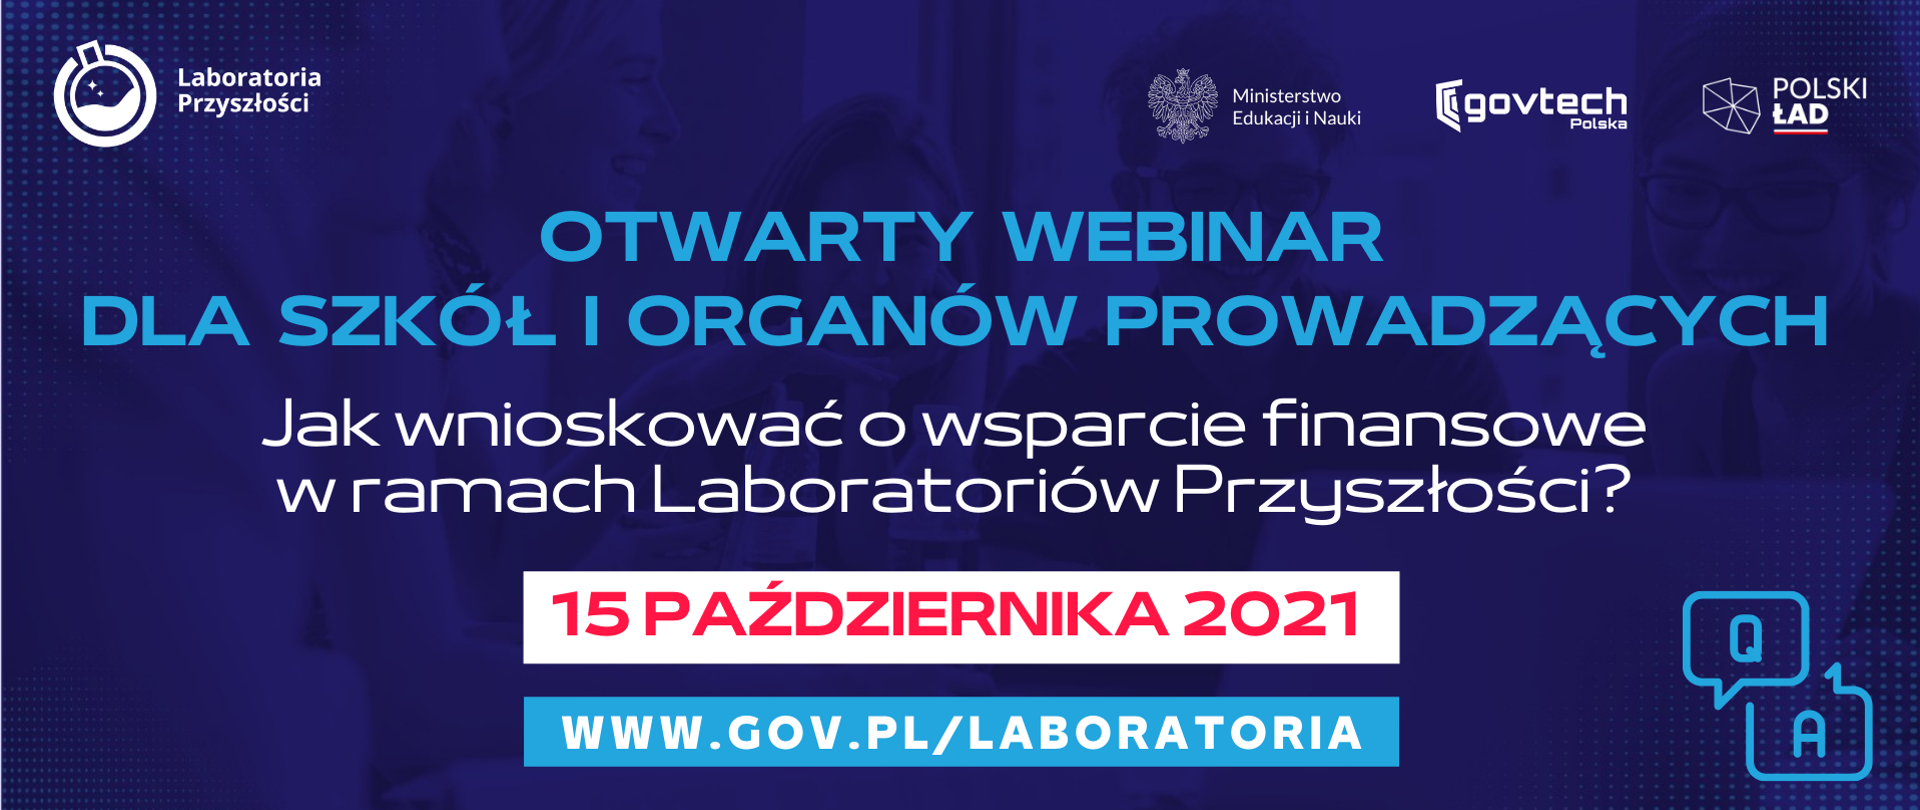 
Webinar dla szkół i organów prowadzących
Jak wnioskować o wsparcie finansowe w ramach Laboratoriów Przyszłości?
15 października 2021
www.gov.pl/laboratoria